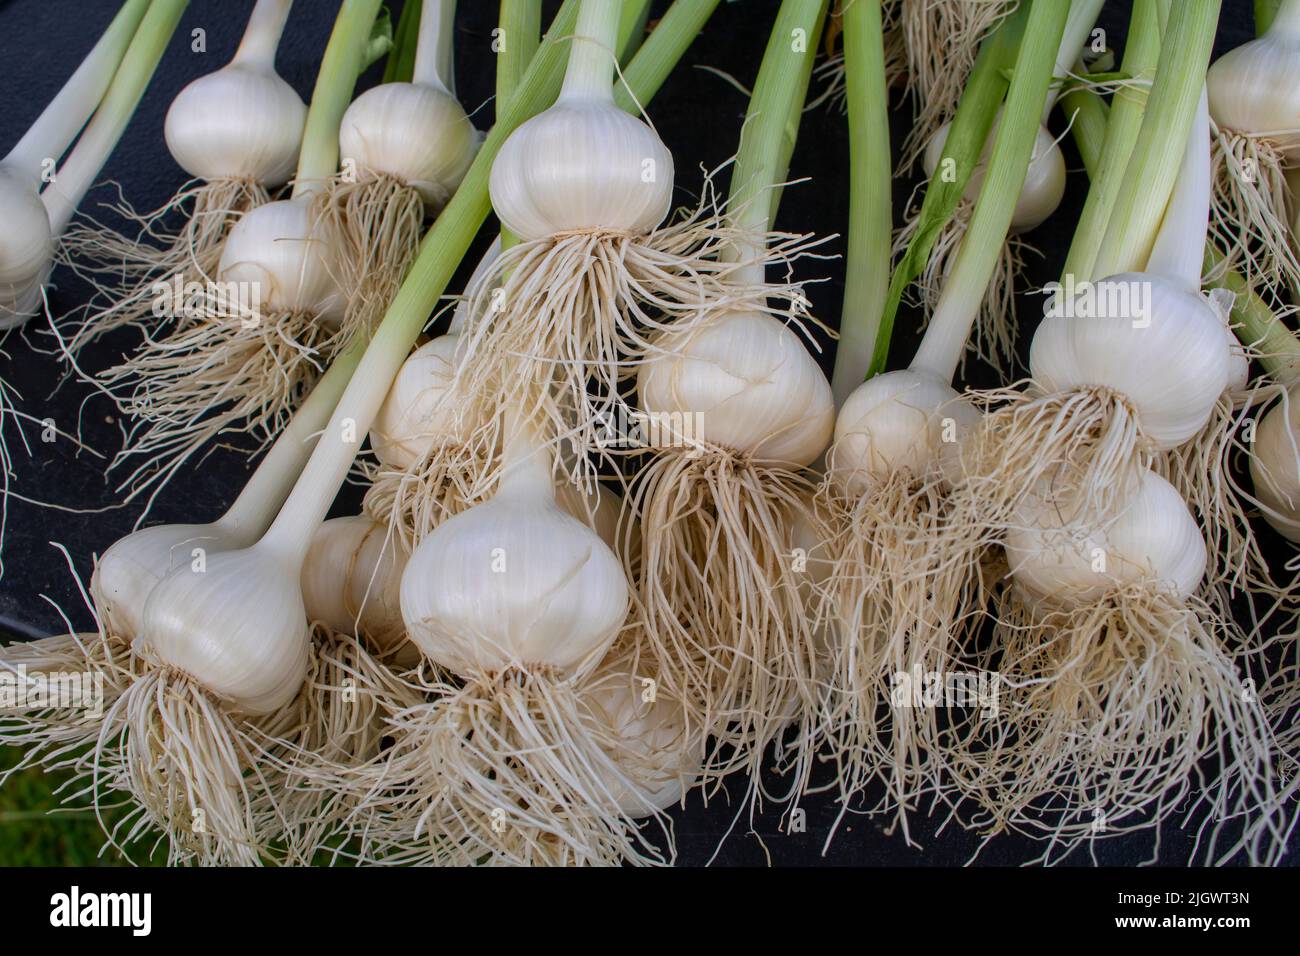 Bulbi d'aglio con gambi verdi lunghi in mostra al mercato di un agricoltore Foto Stock